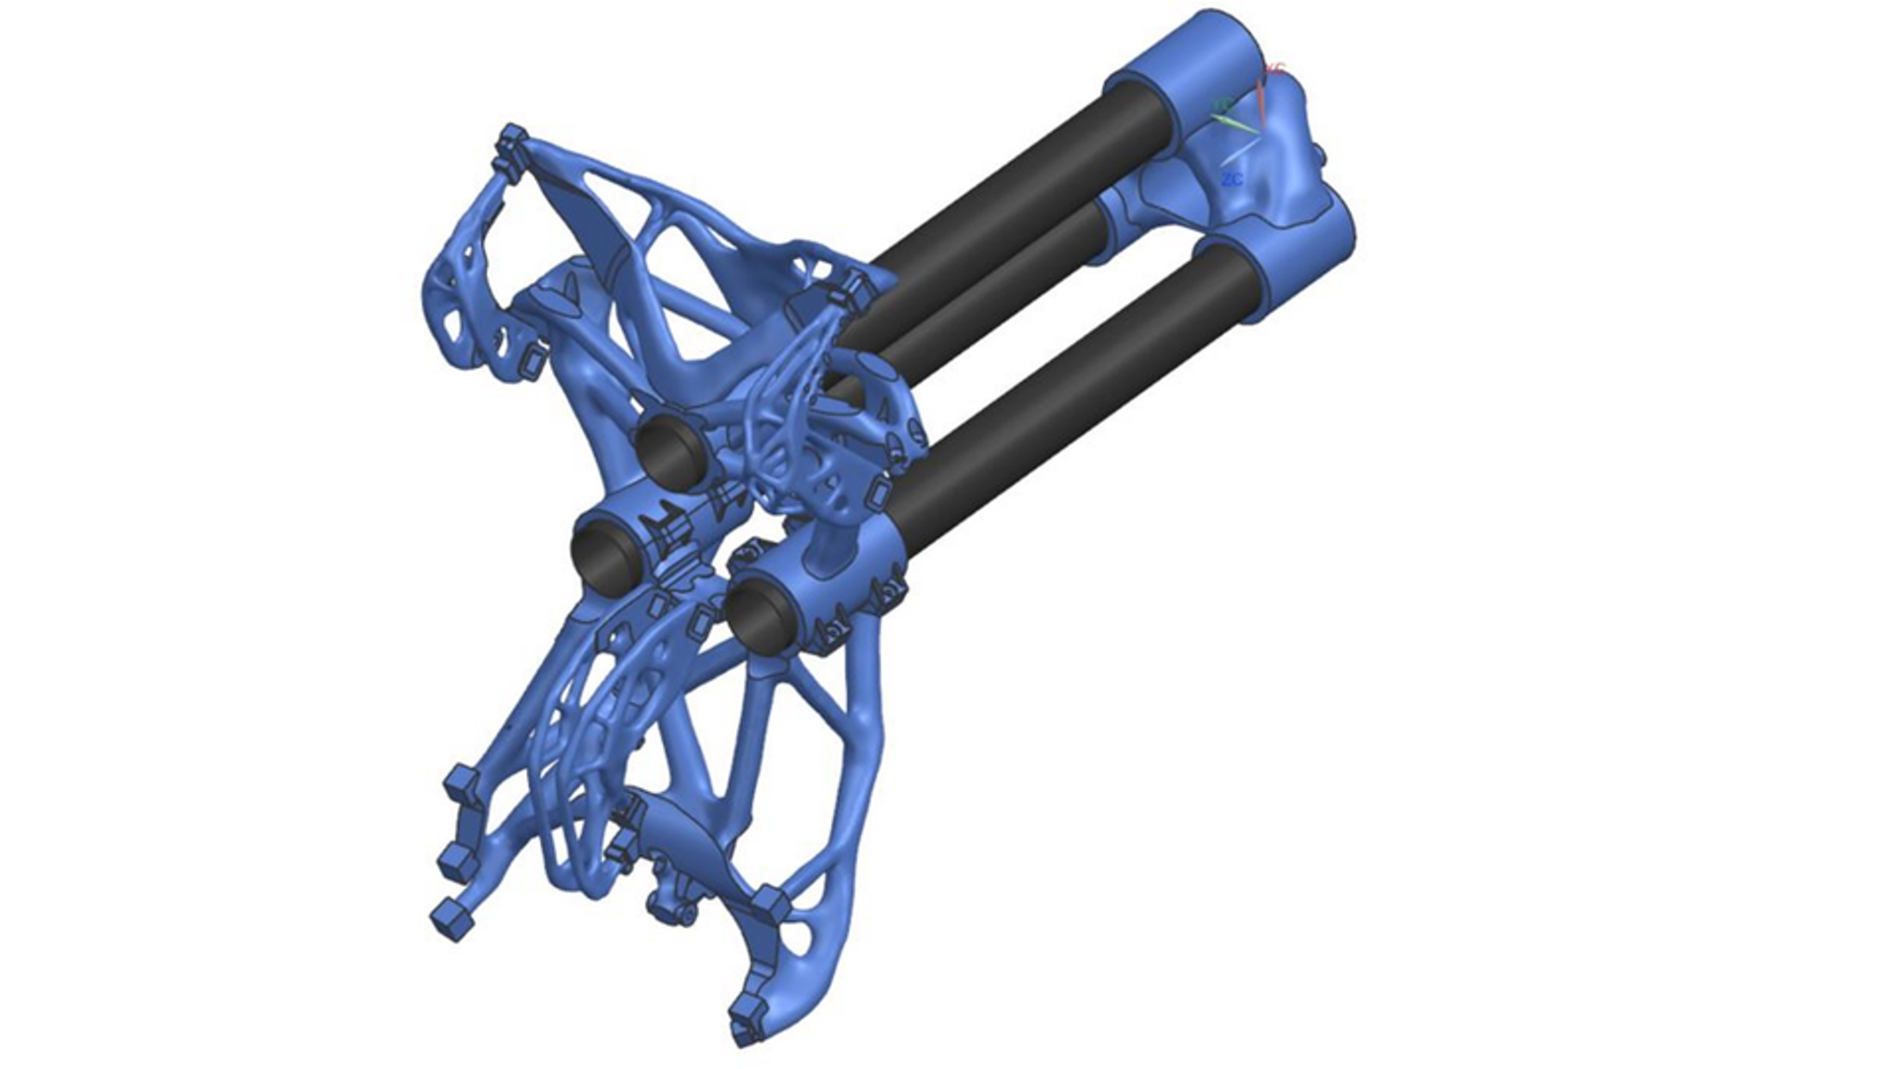 Auch bei 3D-gedruckten Robotergreifern lässt sich durch das topologieoptimierte Design deutlich Gewicht einsparen, was am Ende die Roboter effizienter machen kann. Bild: Siemens